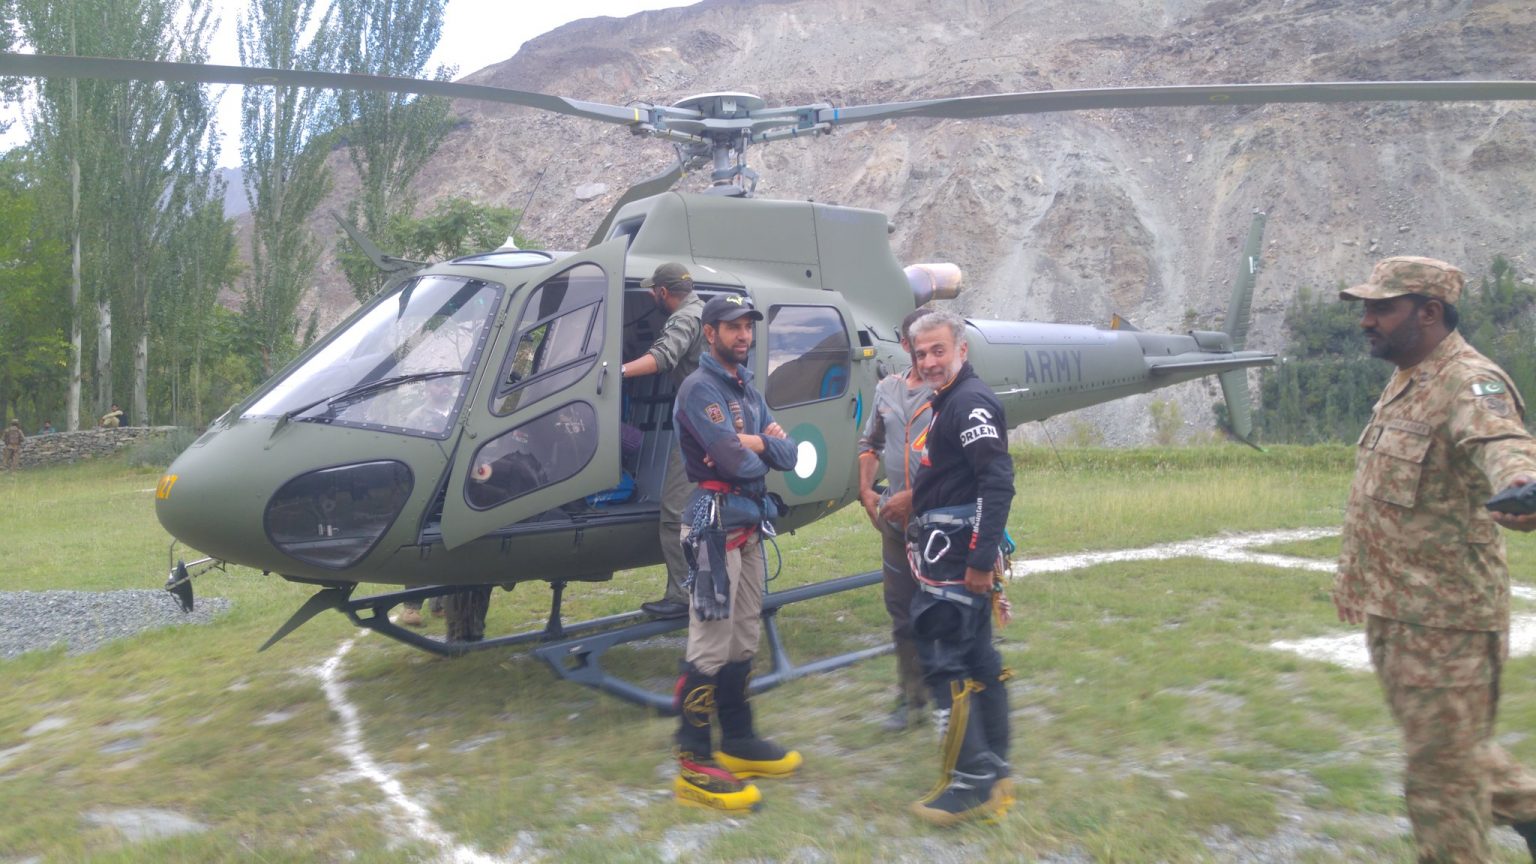 Спасатели: Абдул Джоши (Abdul Joshi) слева и Карим Хайят (Karim Hayat) готовятся к облету горы Ракапоши на вертолете. Фото: Karim Shah Nizari